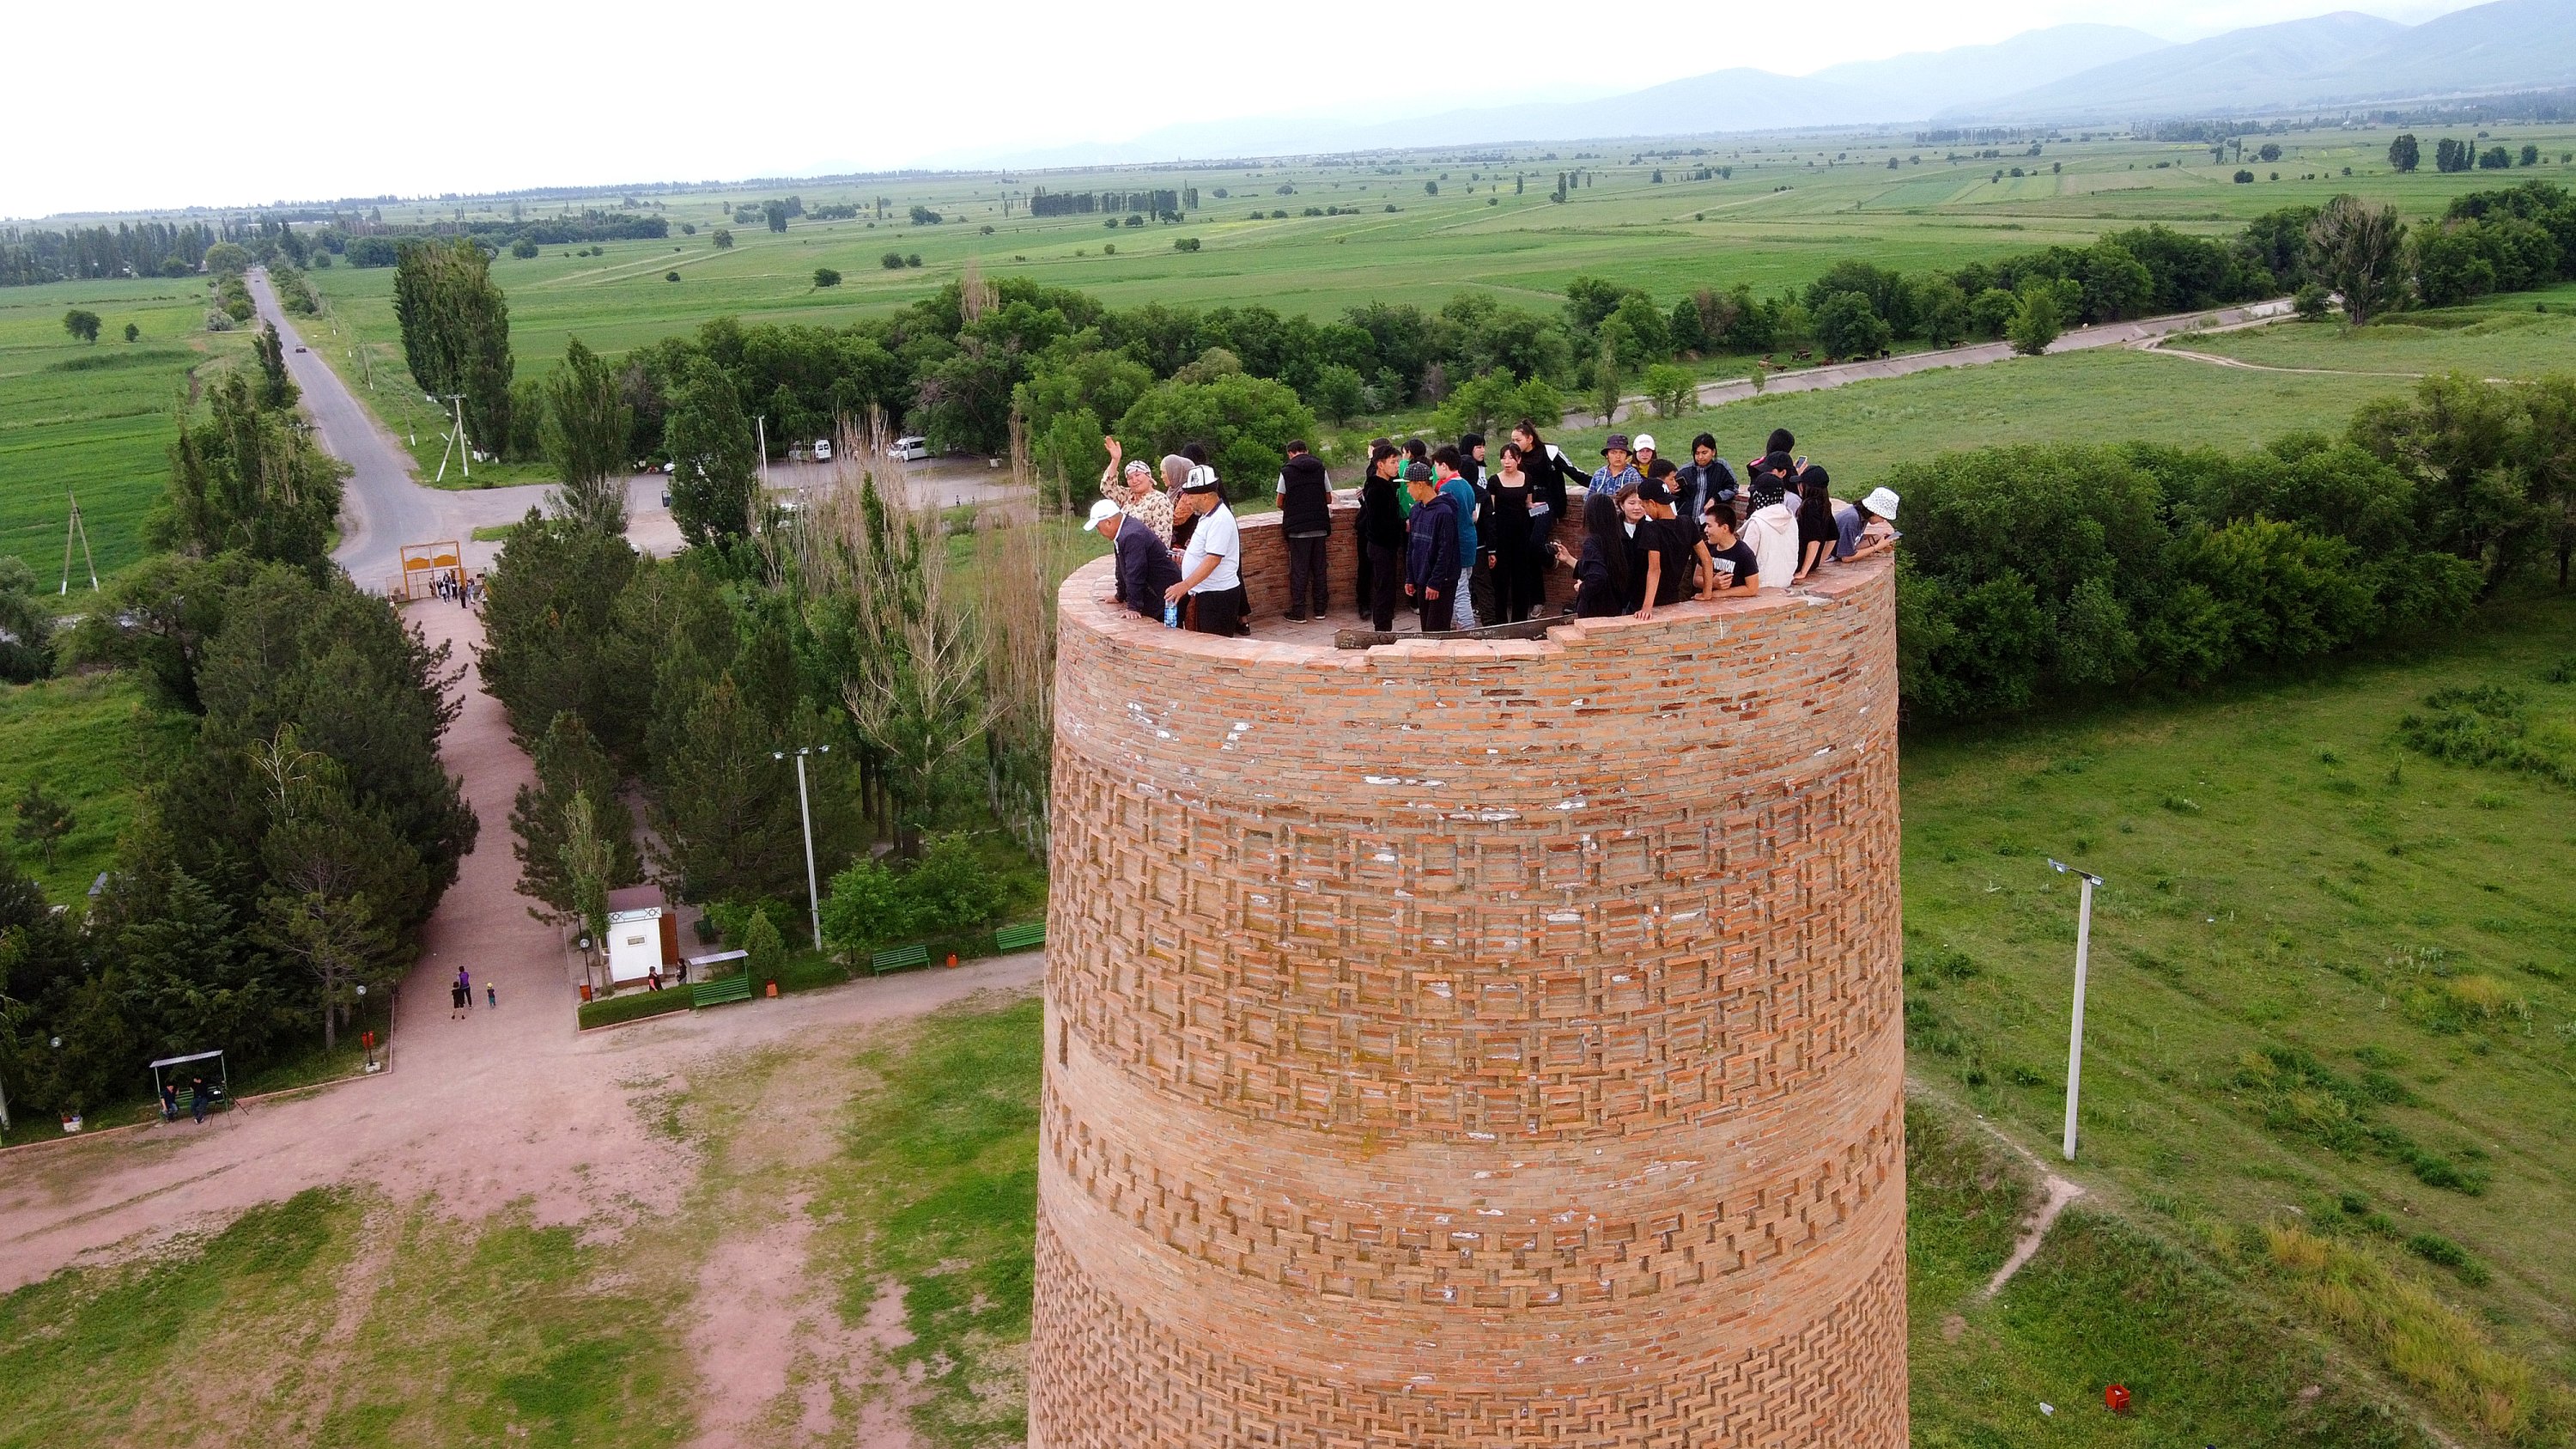 Menara Burana berbentuk bulat di Kyrgyzstan sering dikunjungi wisatawan lokal dan asing karena sejarah dan arsitekturnya, Bishkek, Kirgistan, 25 Mei 2022. (AA Photo)